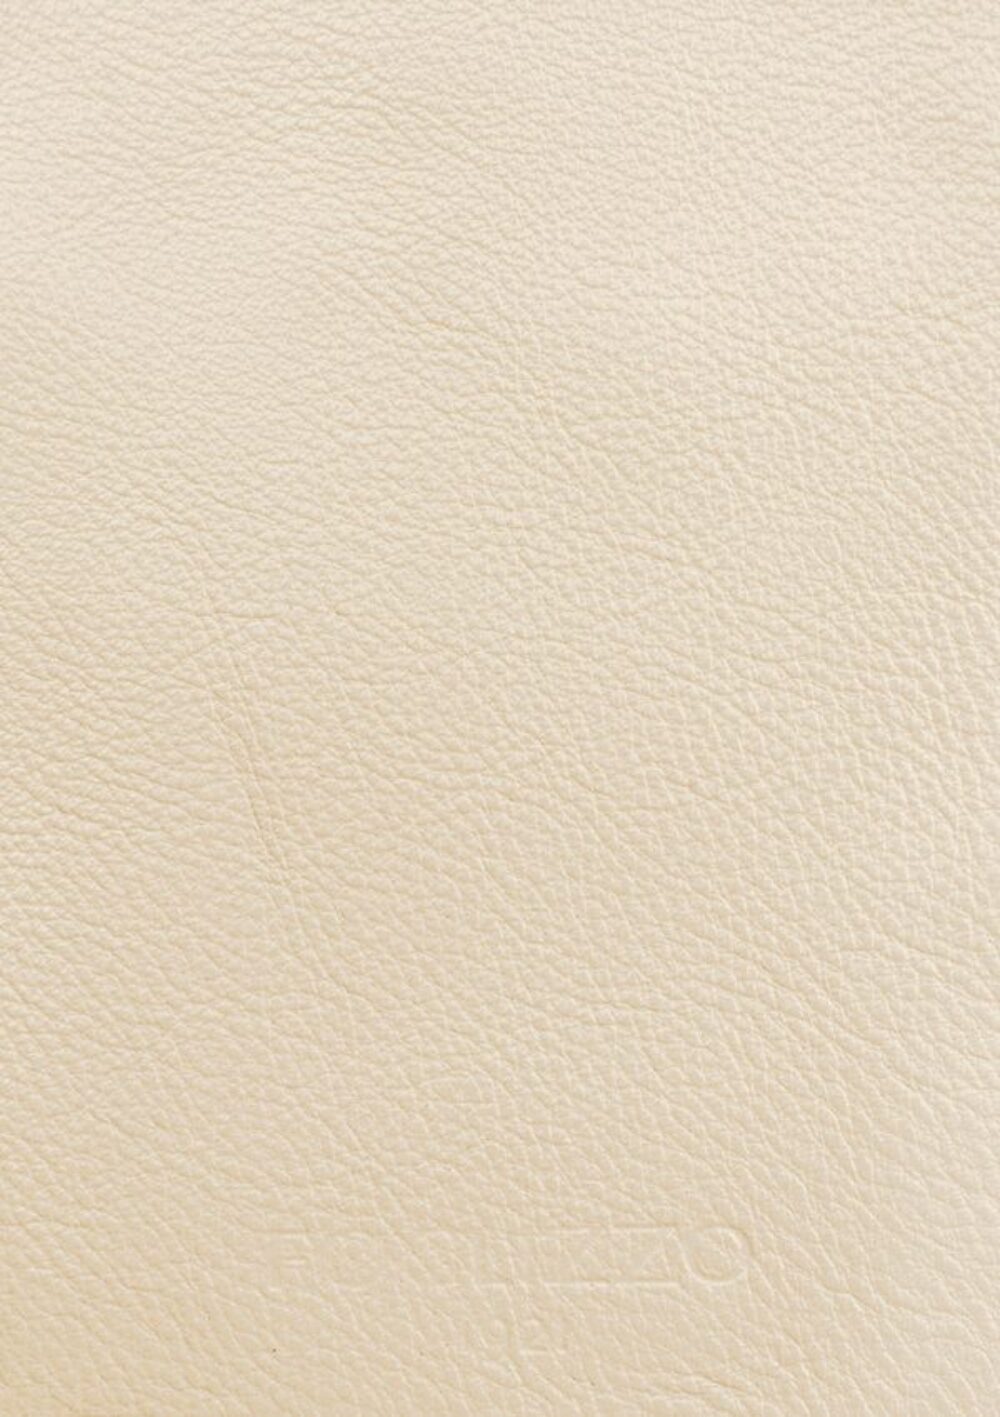 Luxusdesign und hochwertige Teppiche nach Maß • Rose Pearl White Jade